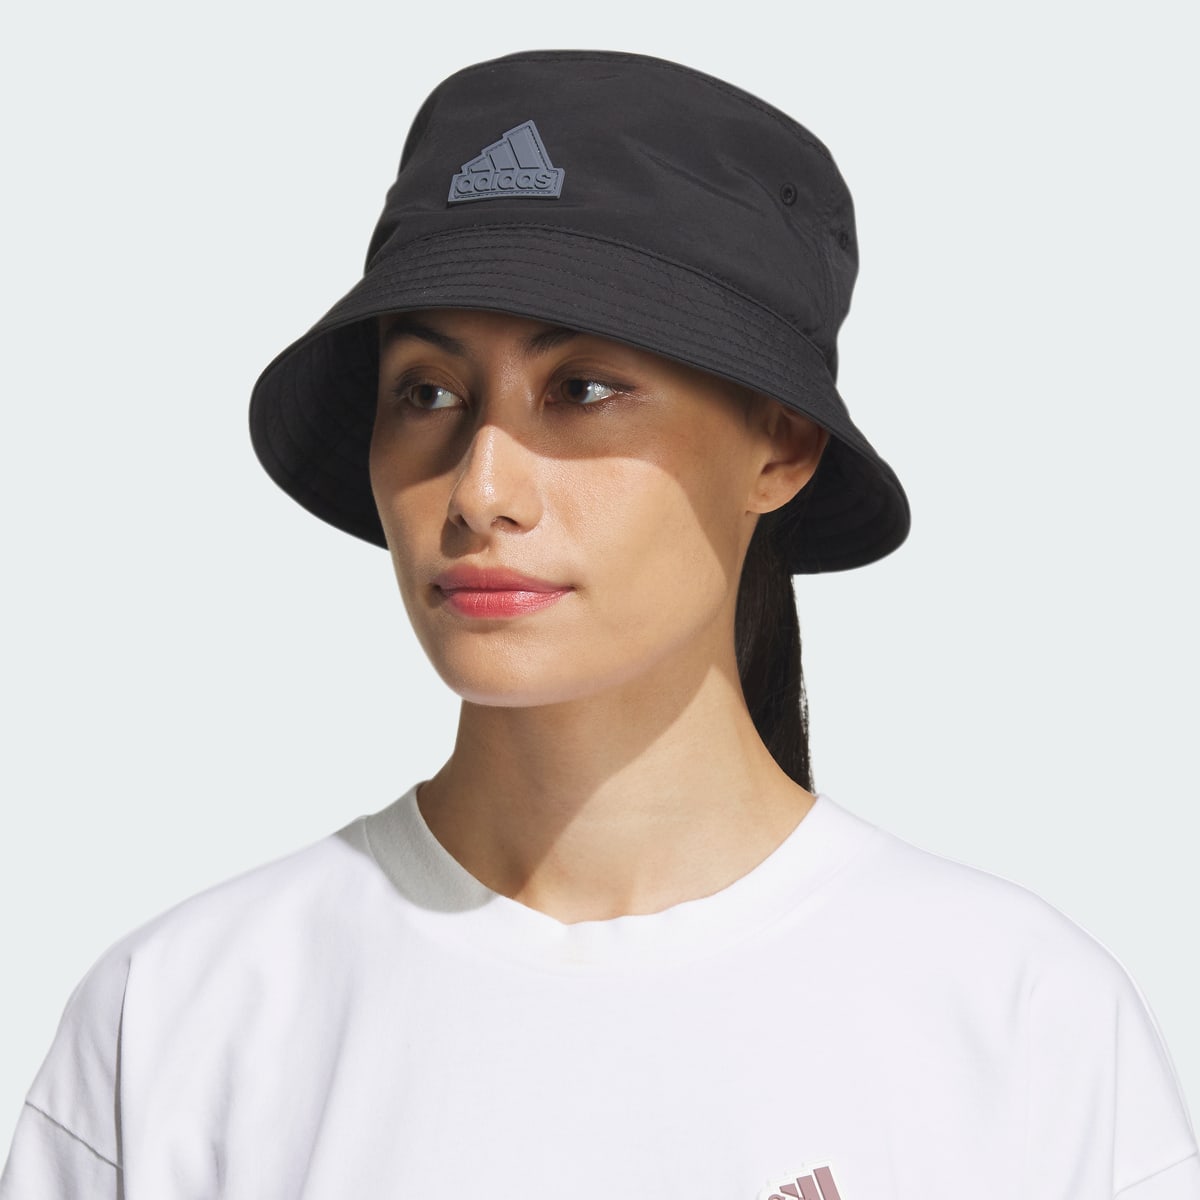 Adidas Shoreline Bucket Hat. 4